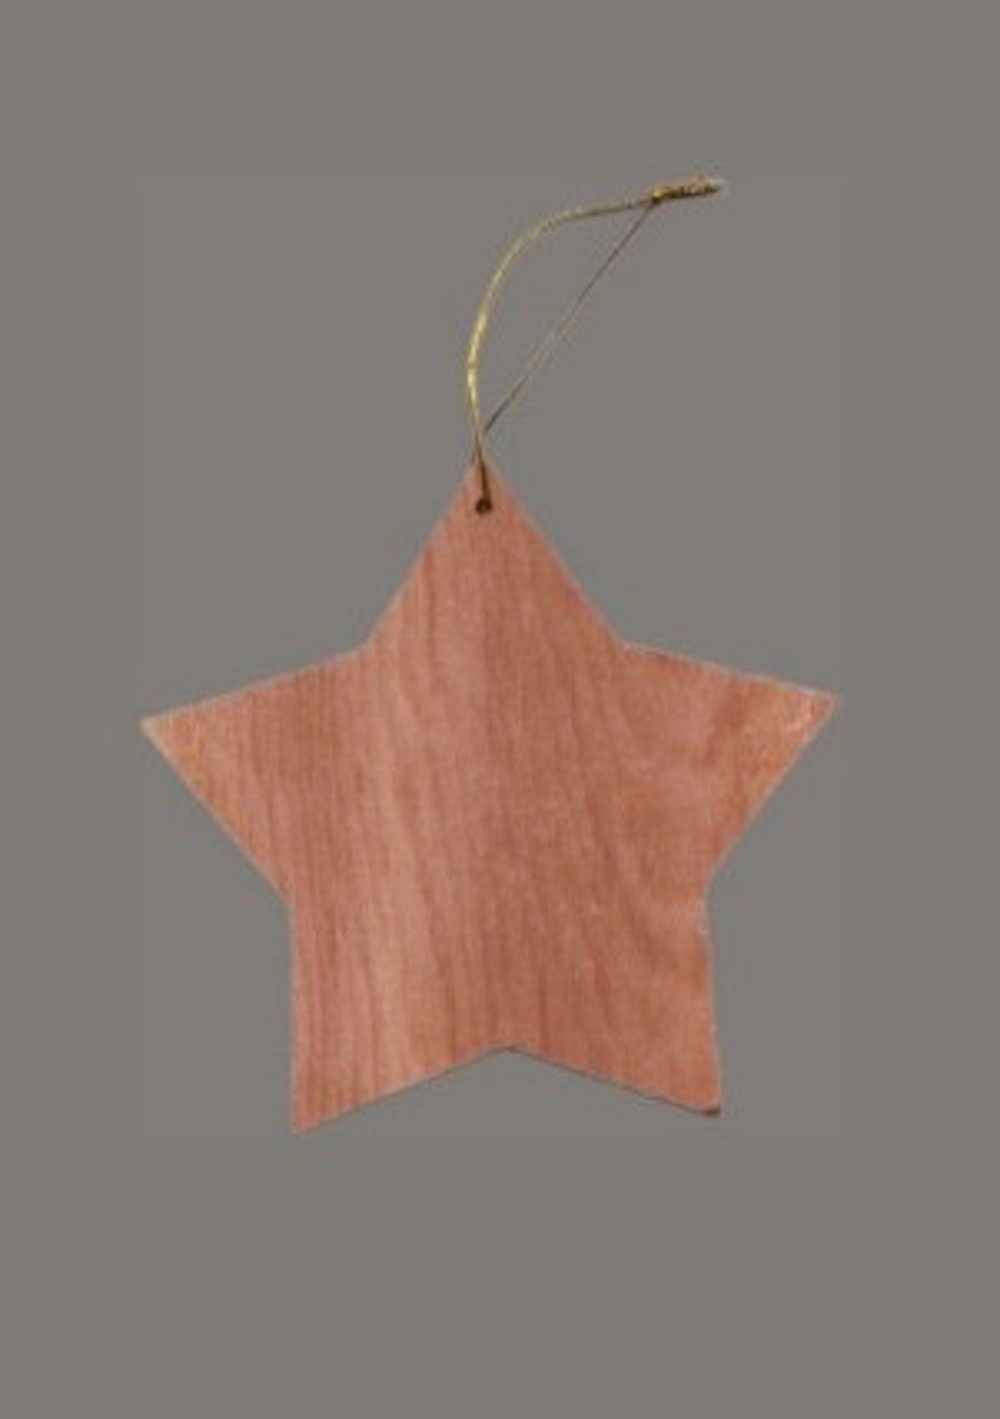  Anhänger für Tannenbaum, Stern aus Holz, 13cm 